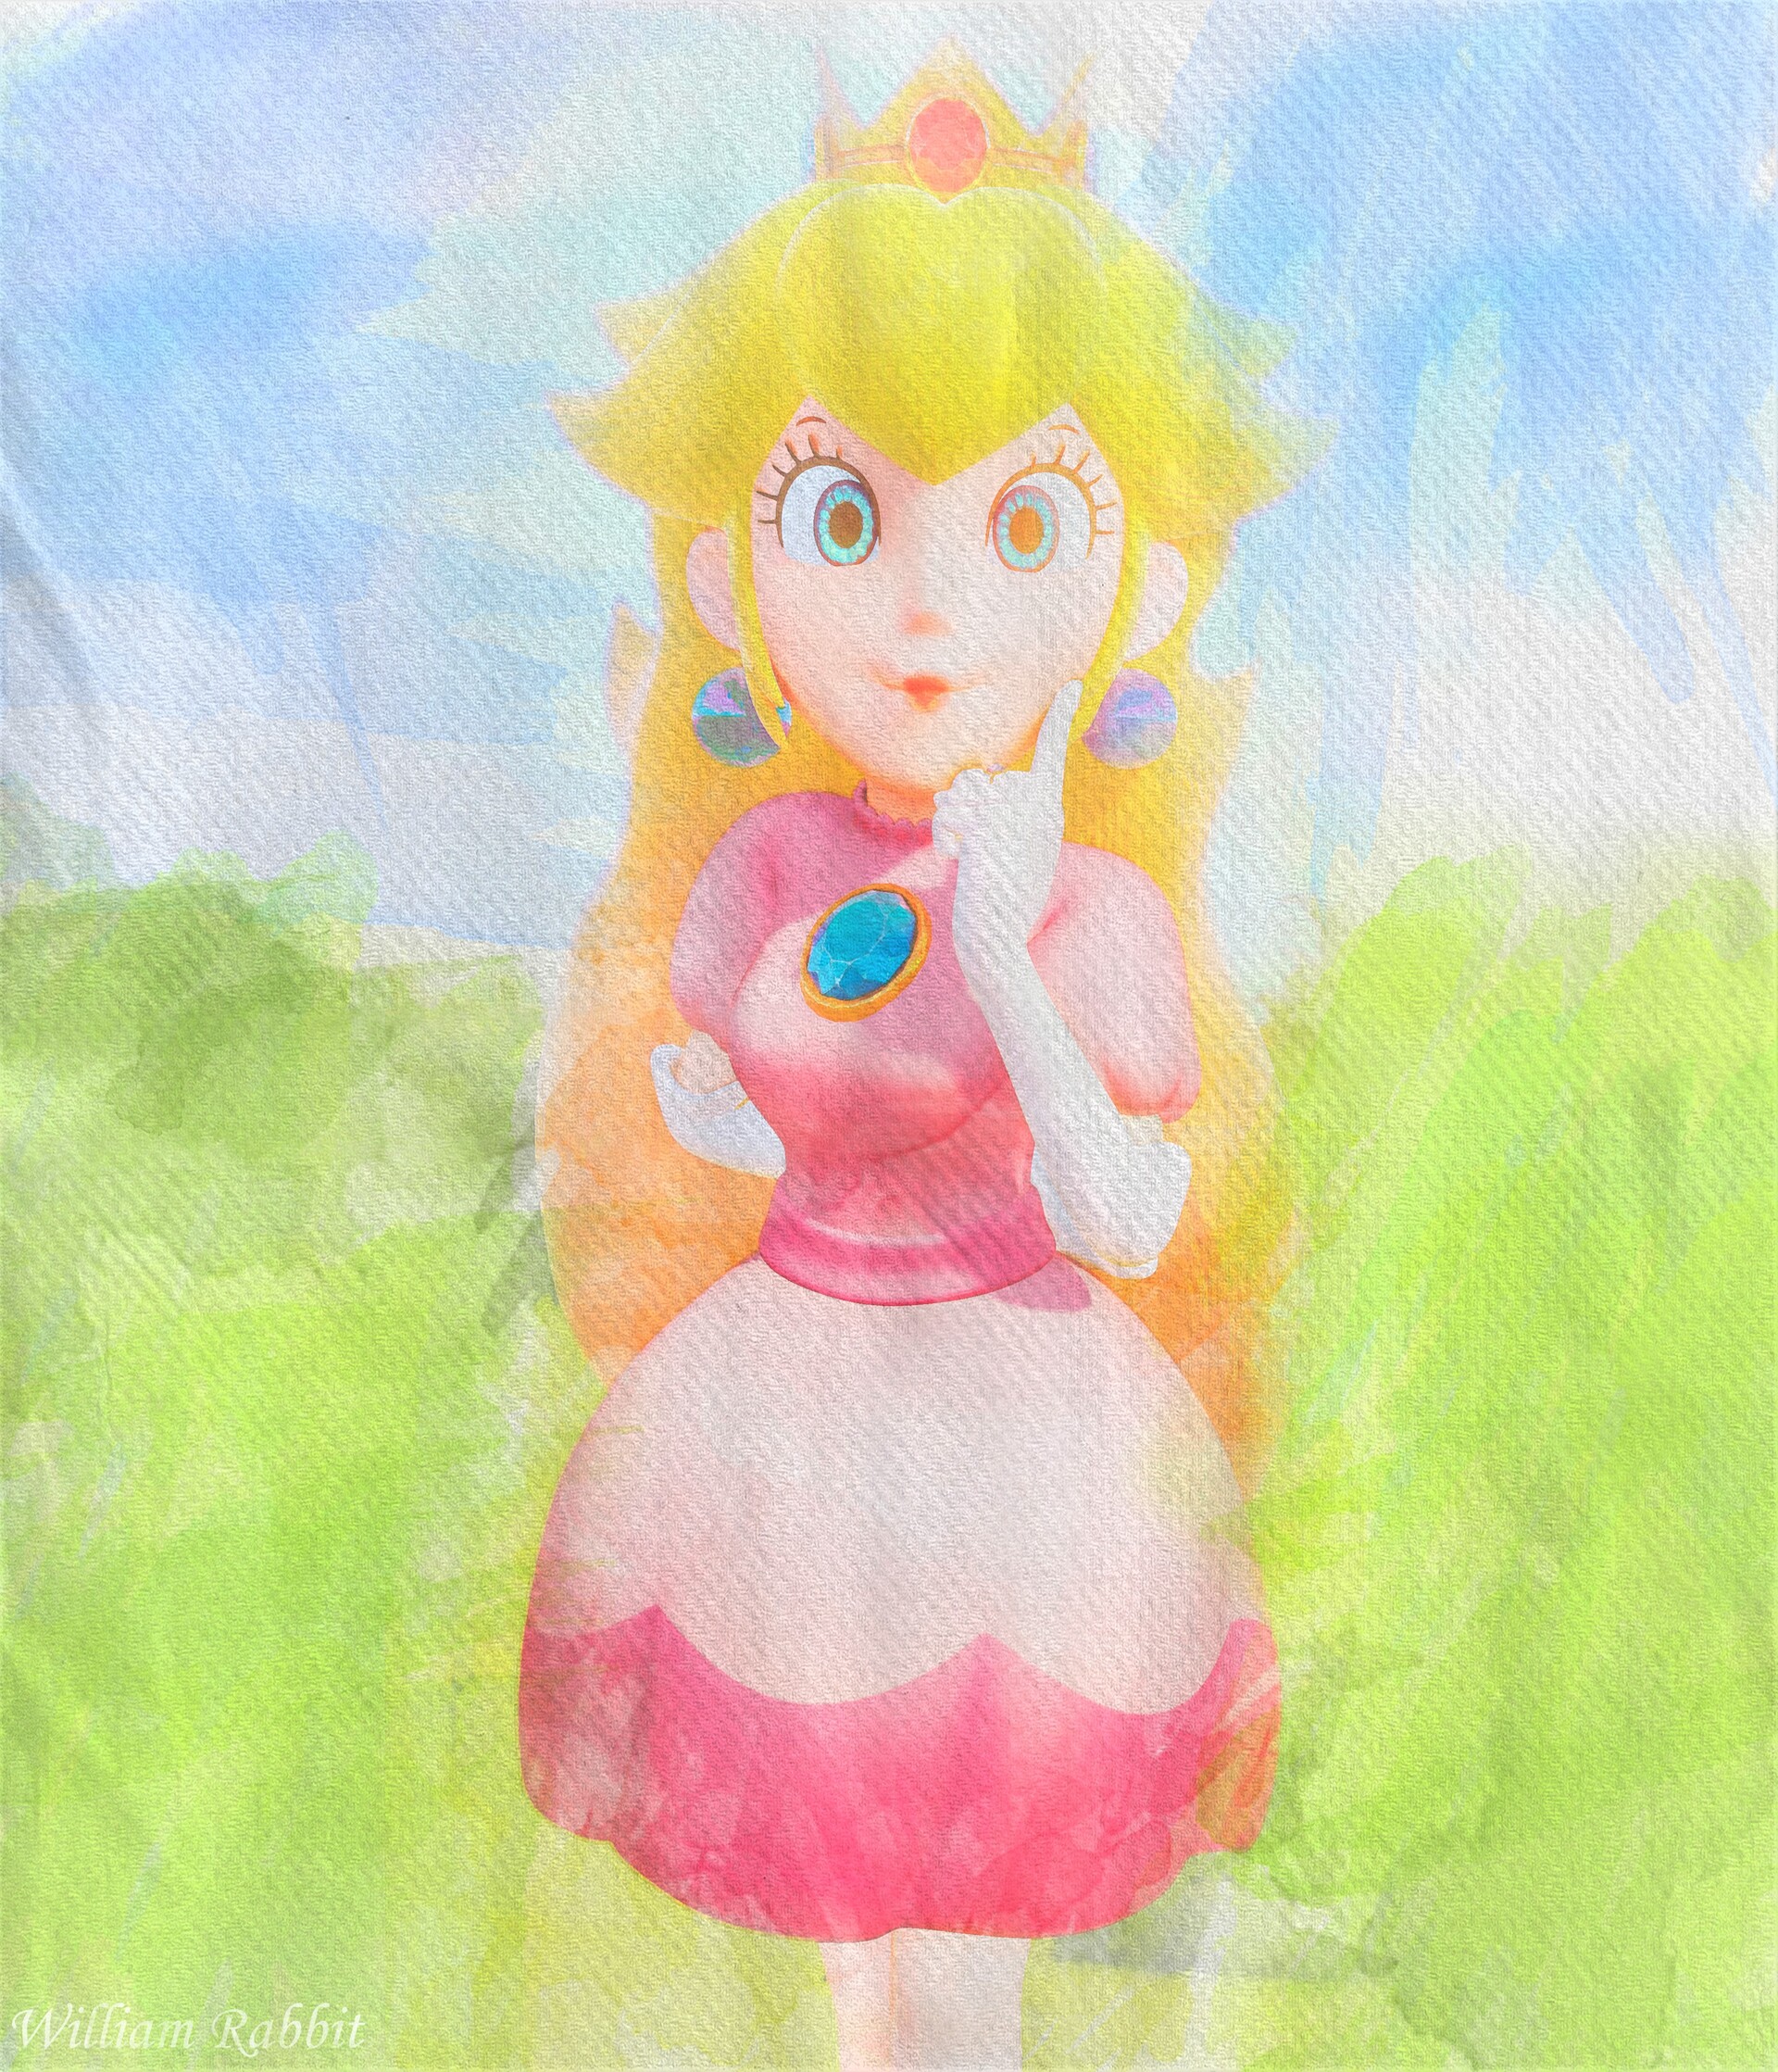 Princess Peach painting.